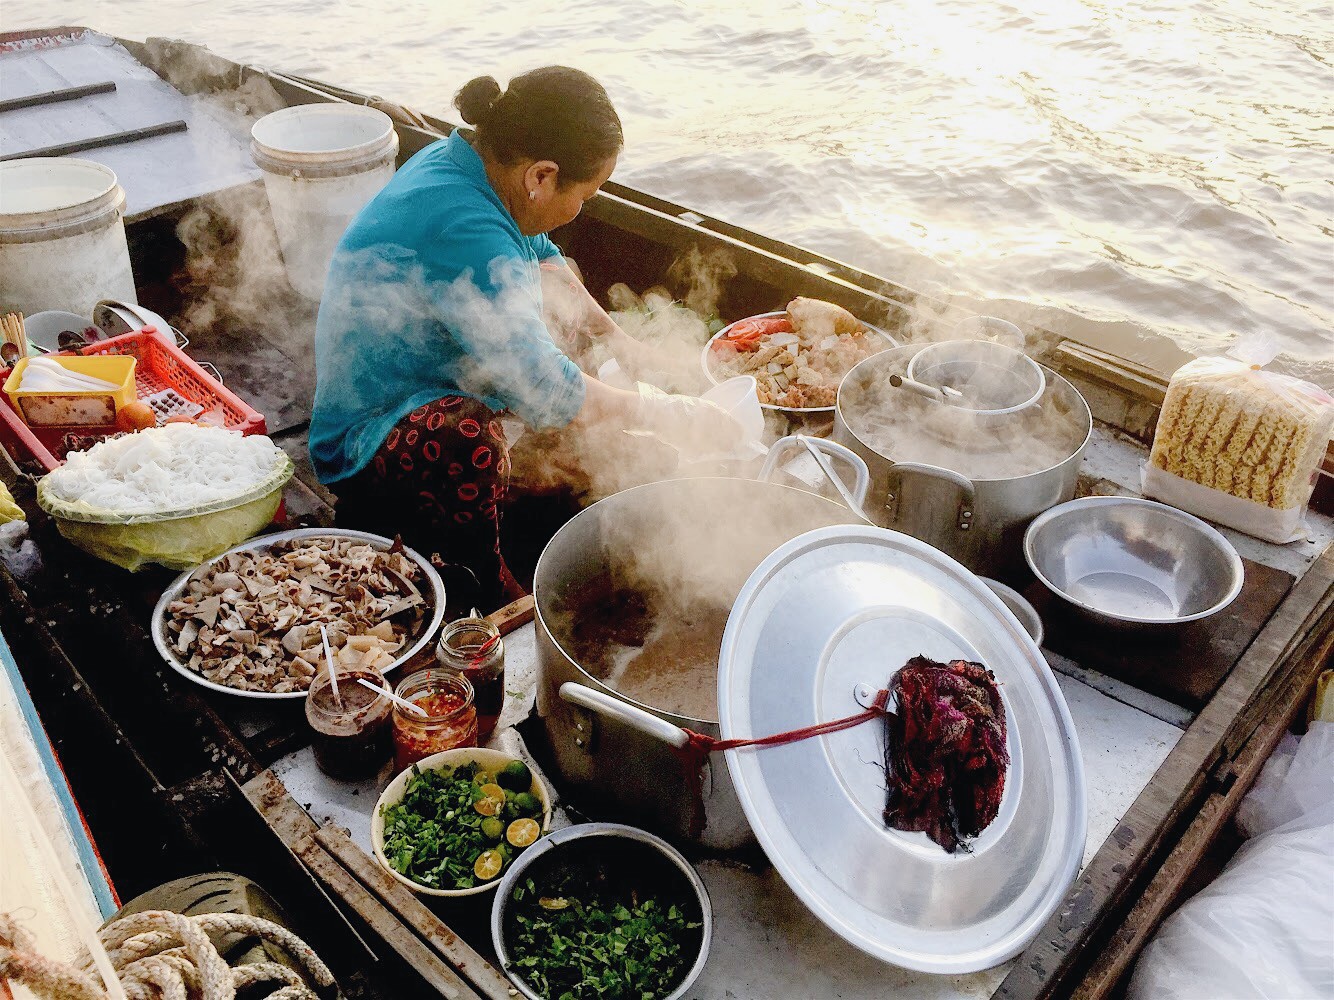 Ẩm thực Việt Nam: Với form phong phú, hương vị đa dạng và ẩm thực độc đáo, Ẩm thực Việt Nam là một trong những thế mạnh văn hóa của đất nước. Bạn có thể tìm thấy những món ăn độc đáo như Phở, Bún chả, Gỏi cuốn, Nem rán... trong các quán ăn và các gian hàng đường phố, và kiểm tra list những món ăn Việt phải thử cho những trải nghiệm ẩm thực tuyệt vời.